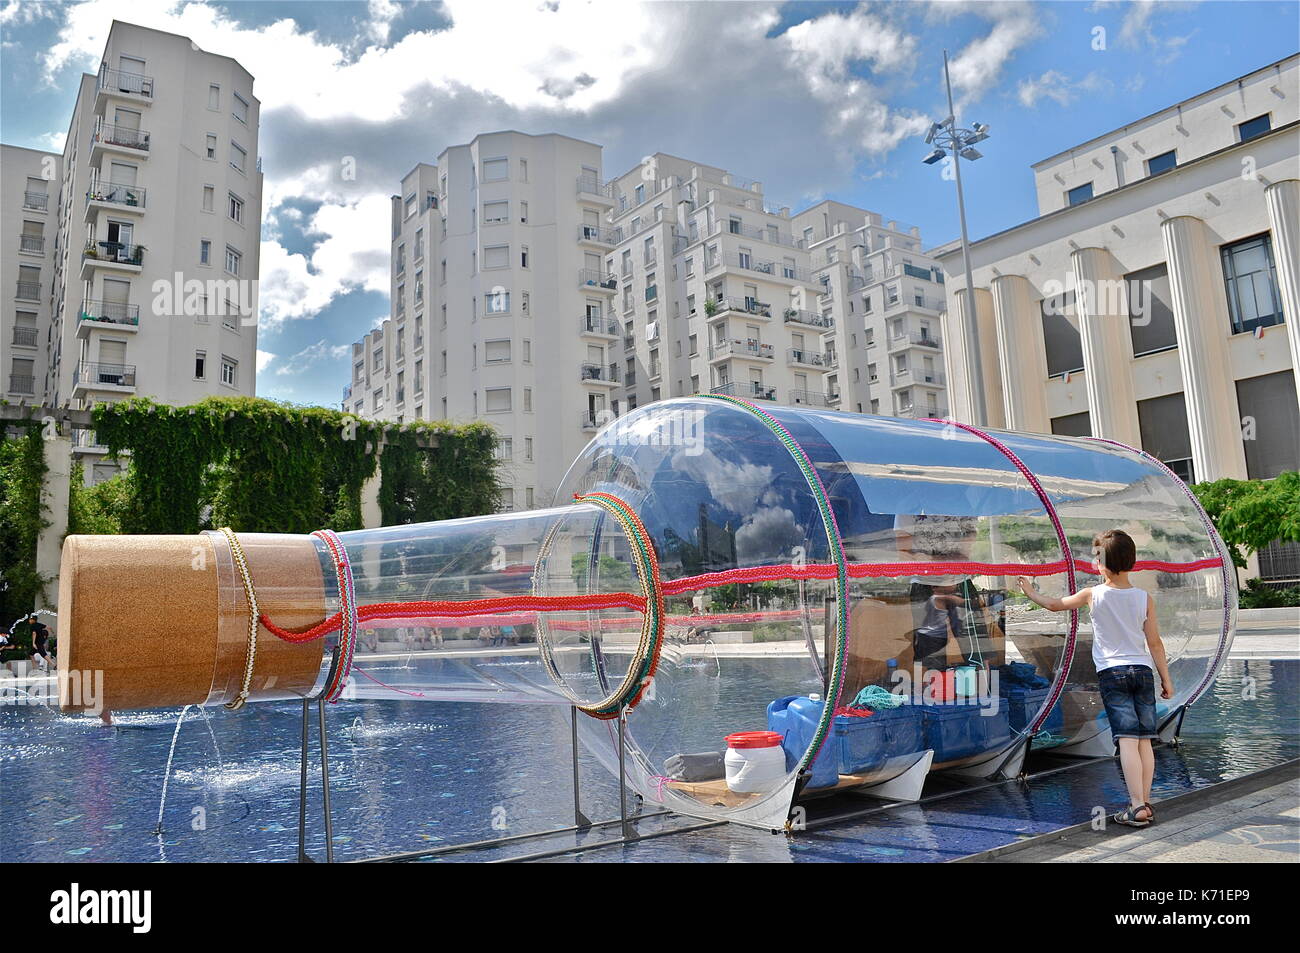 El artista francés abraham poincheval vive en una botella gigante, Villeurbanne, Francia Foto de stock